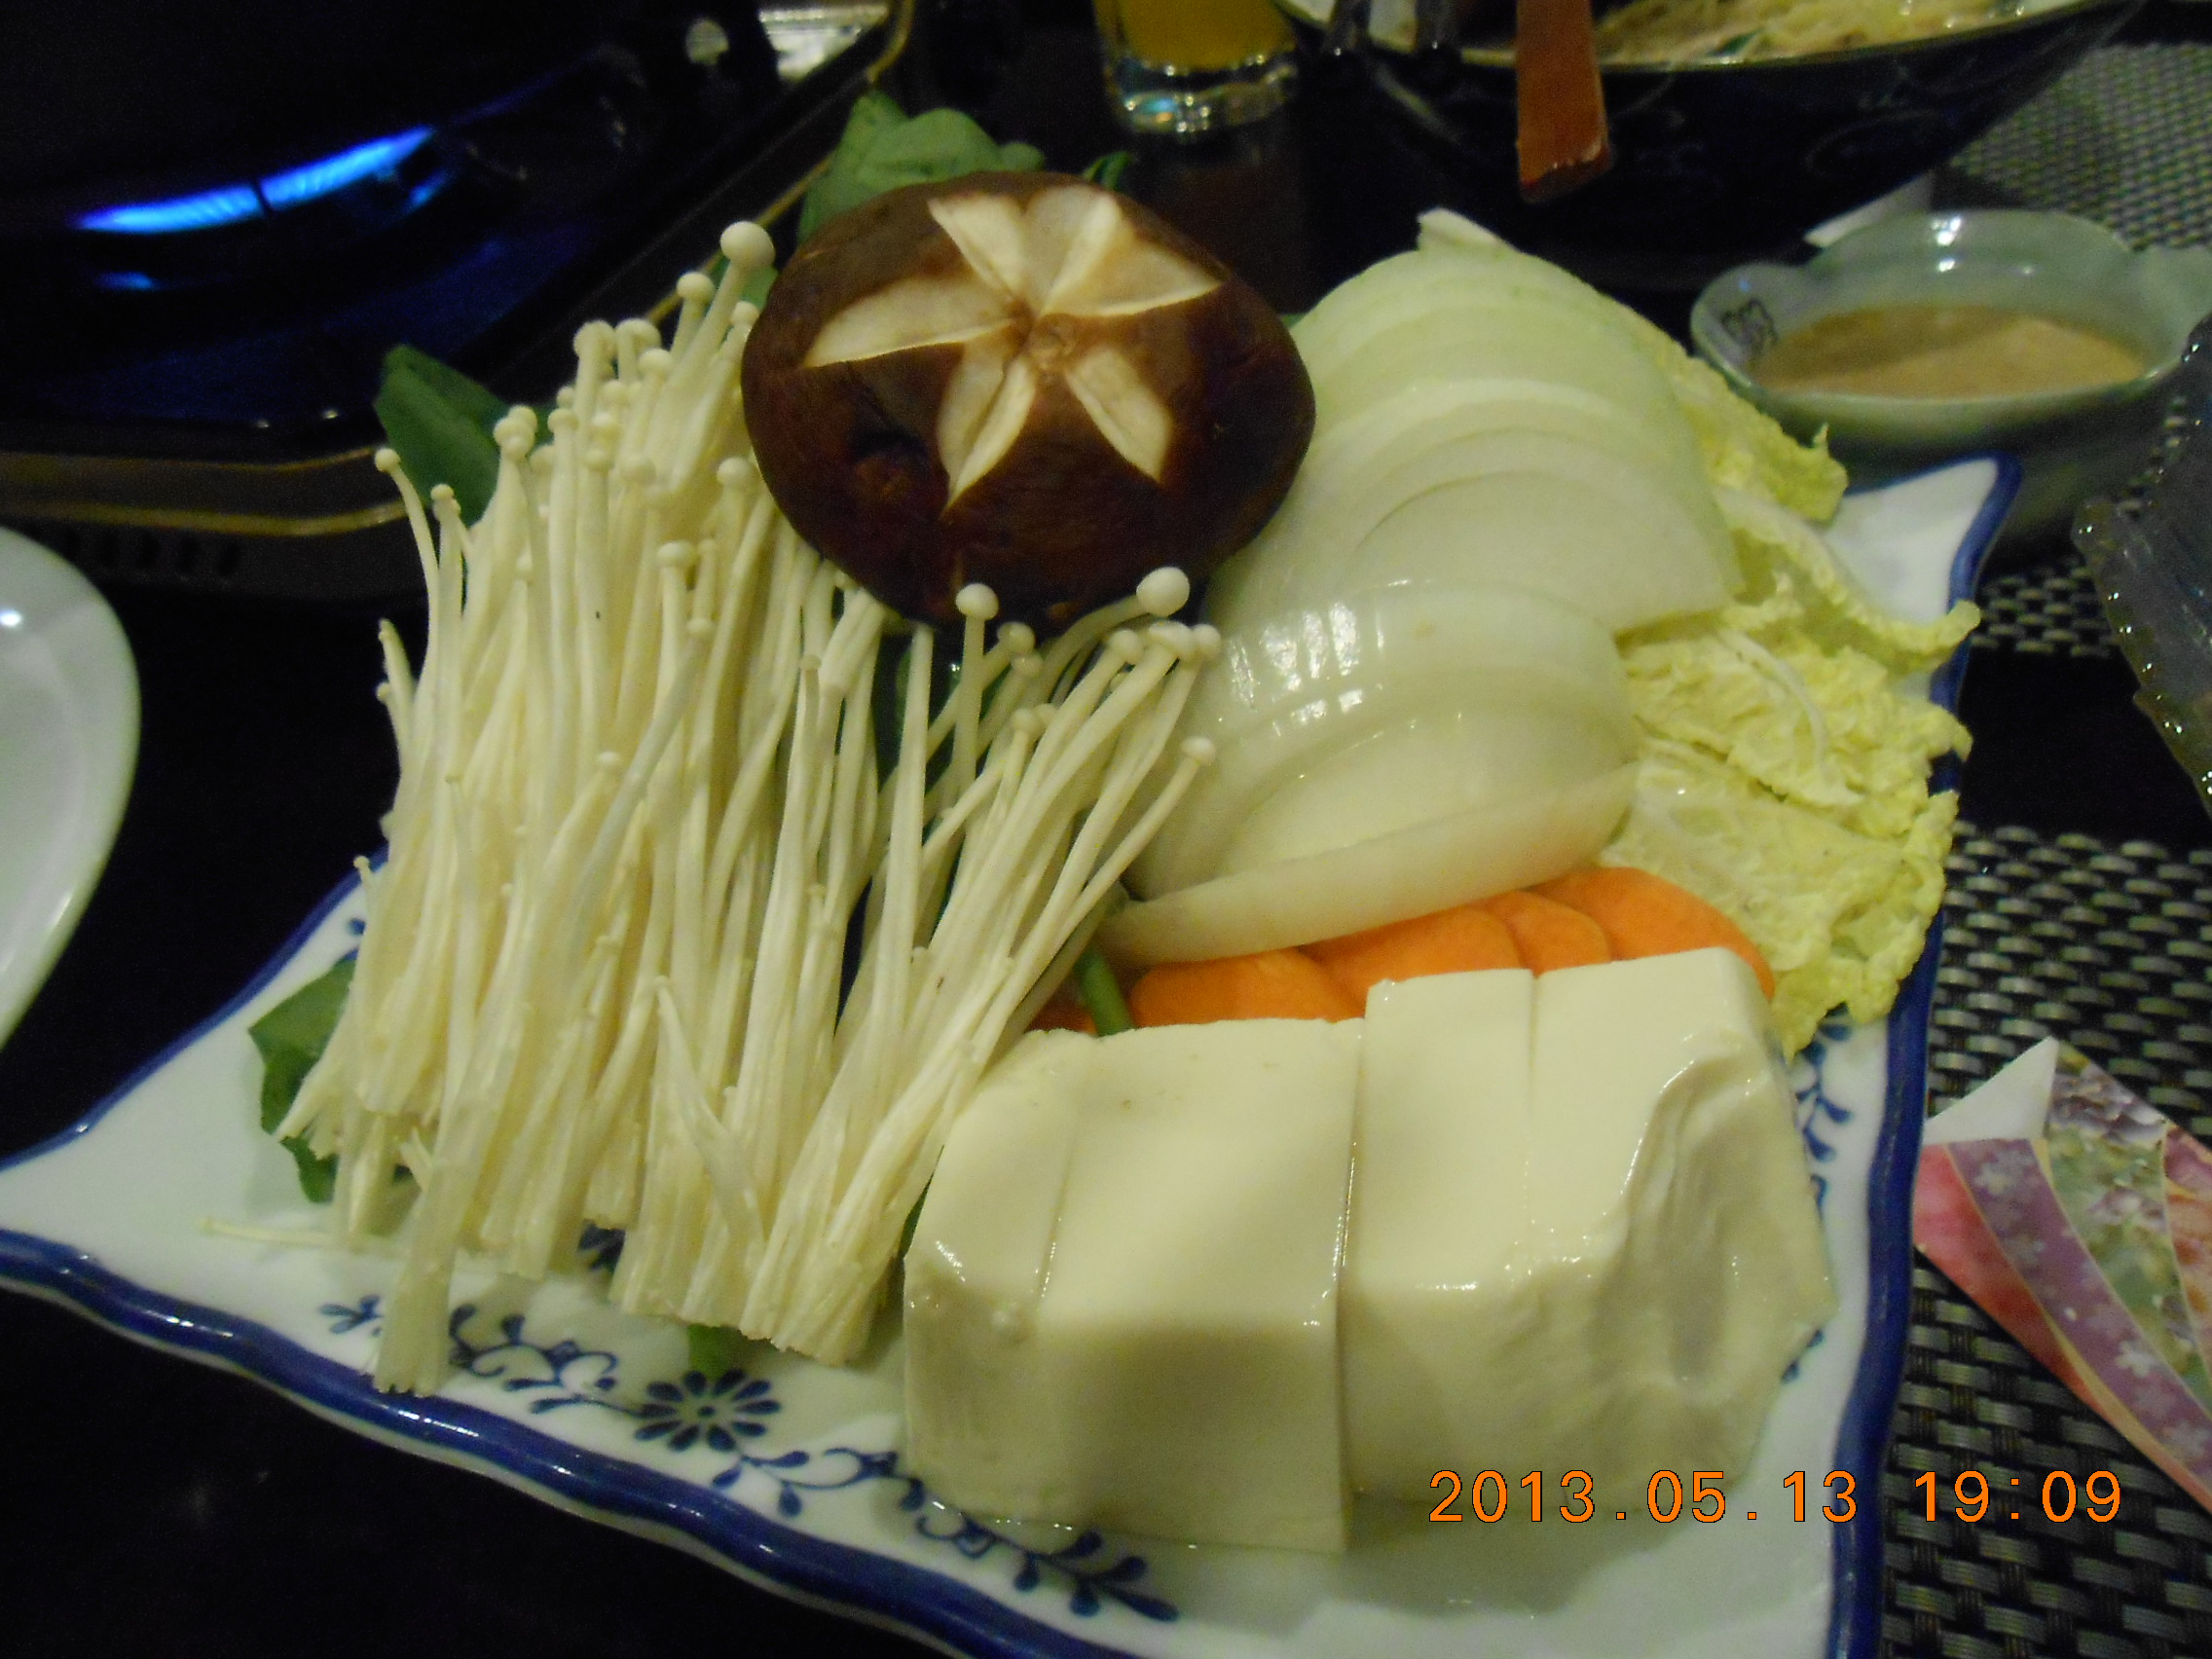 喜欢 引用到评论 日式火锅的配菜